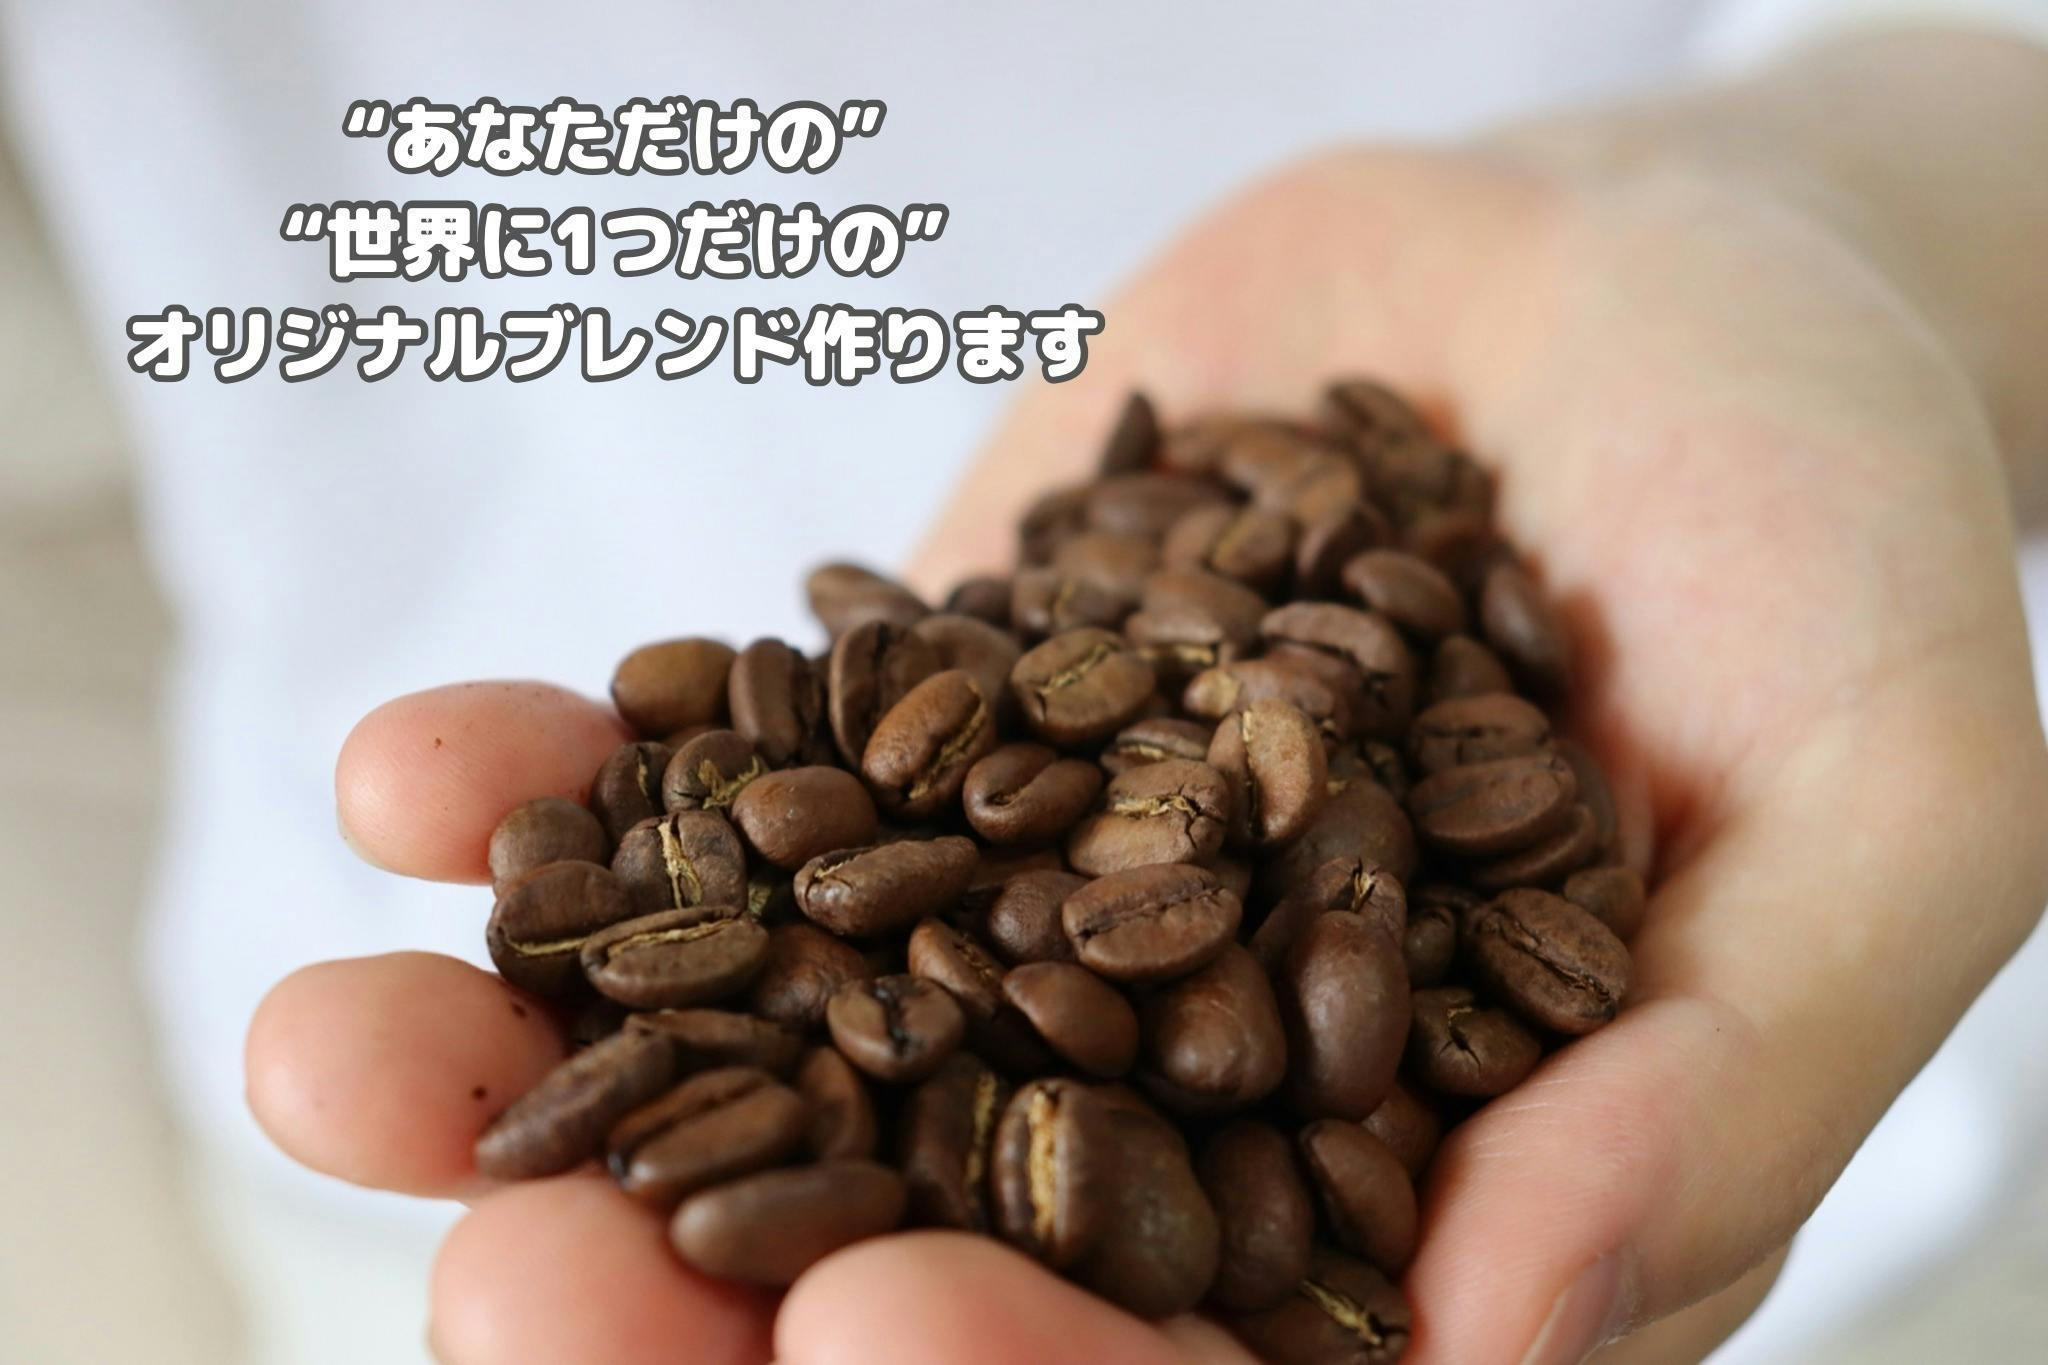 コーヒー生豆 ブルーマウンテンNo.1 １ｋｇ ウォーレンフォード農場 - 飲料